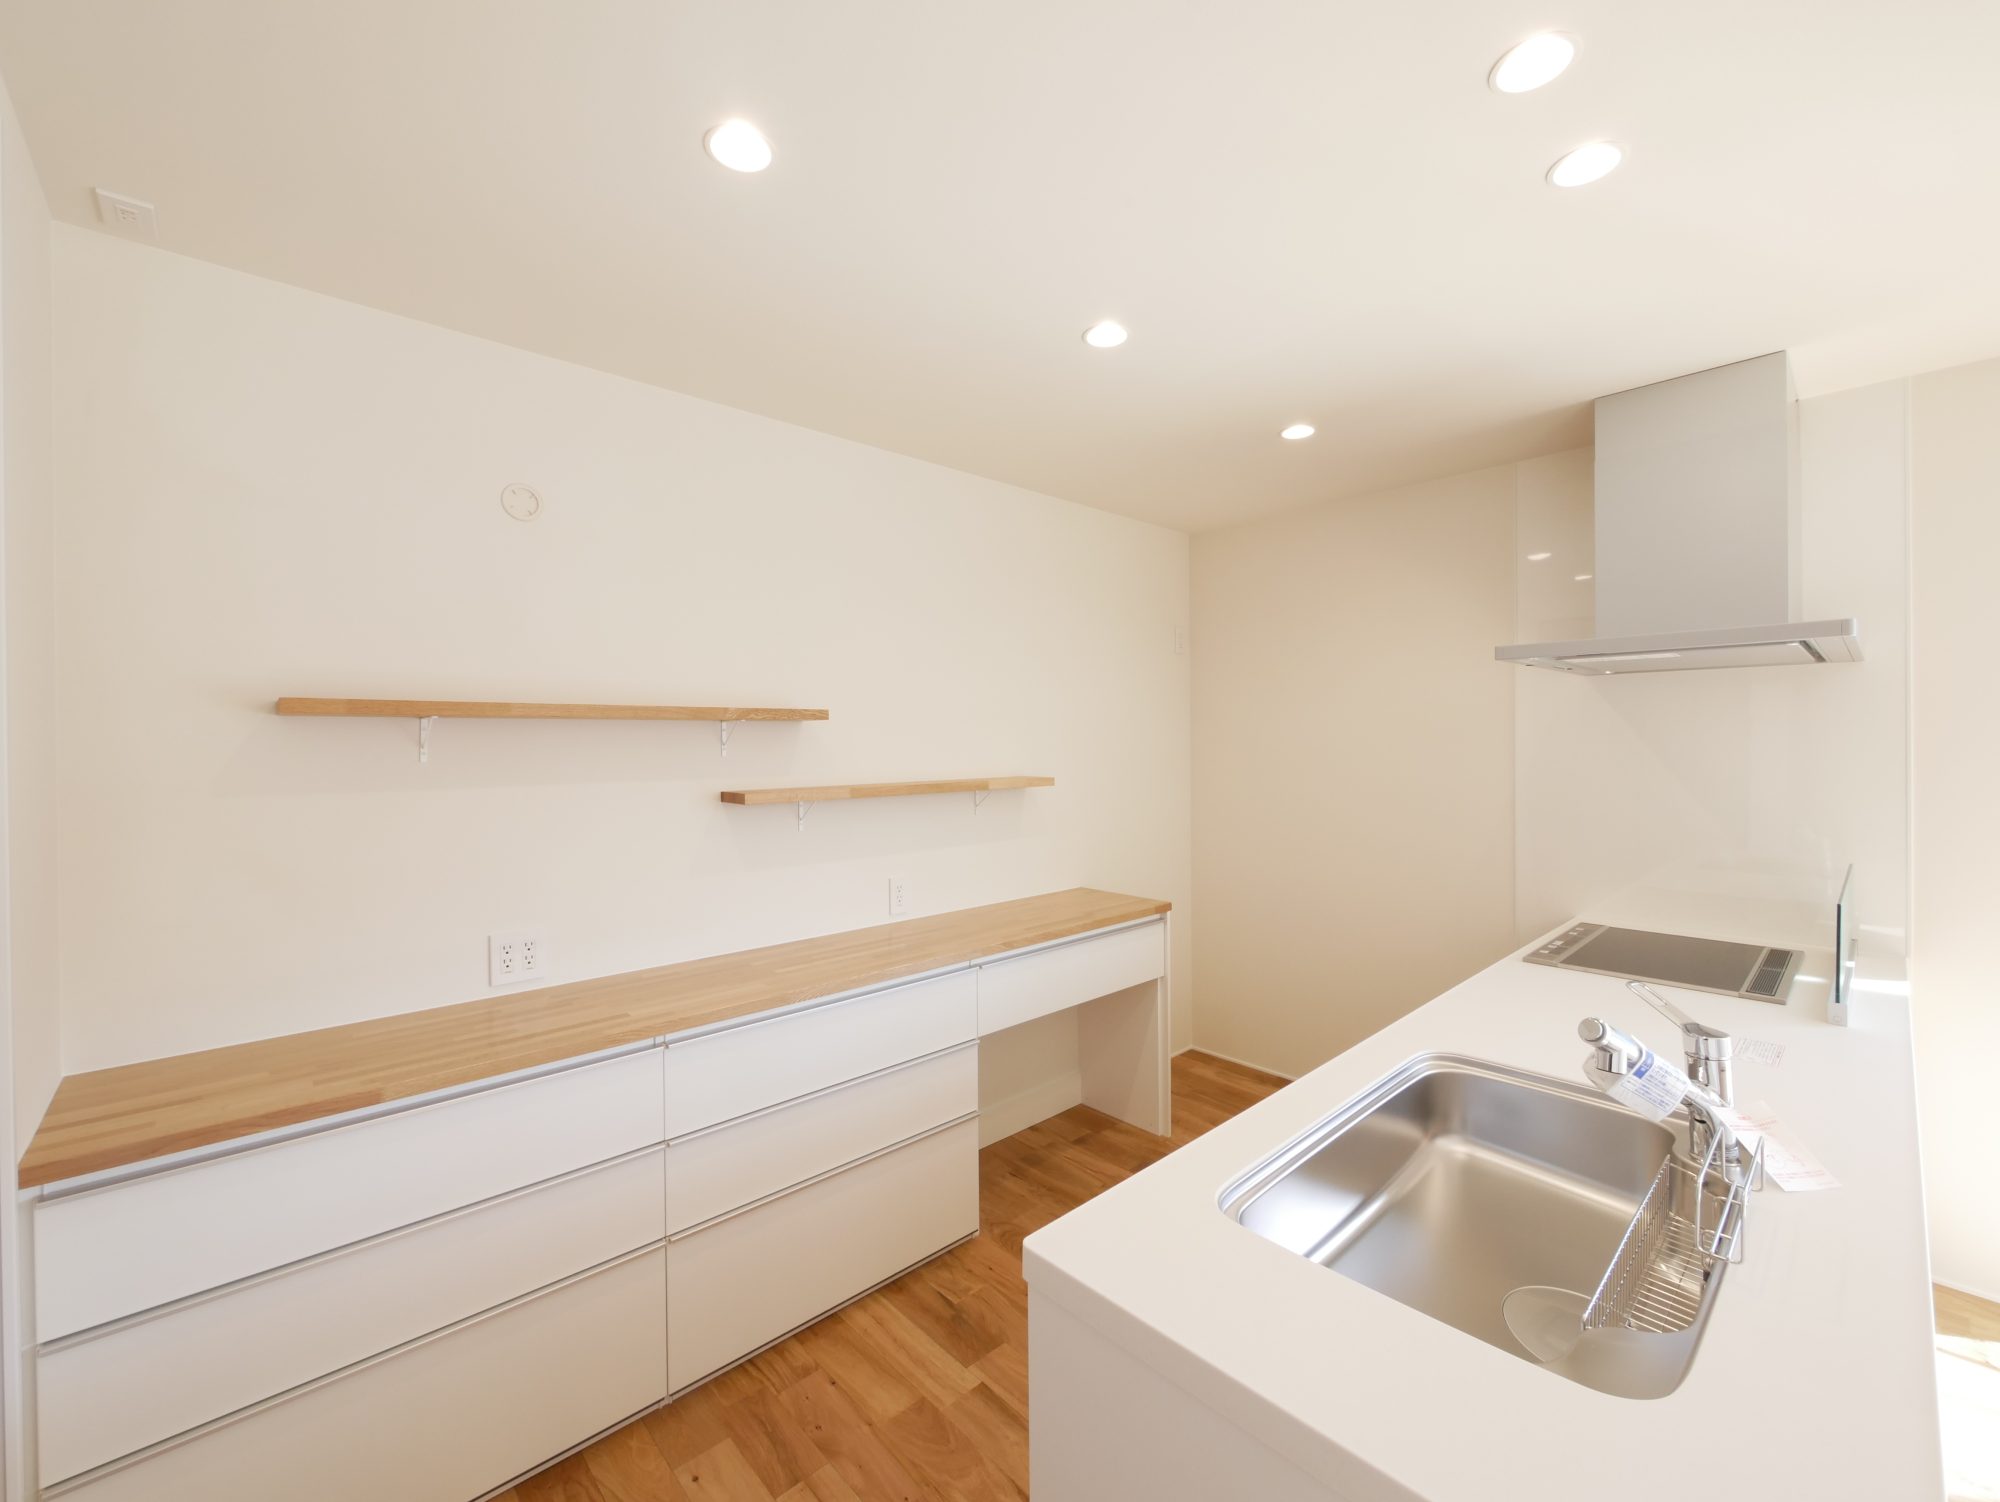 ハウスクラフトのセレクト住宅Rasiaで完成した新築住宅のキッチン 明るい白と背面棚のキッチン